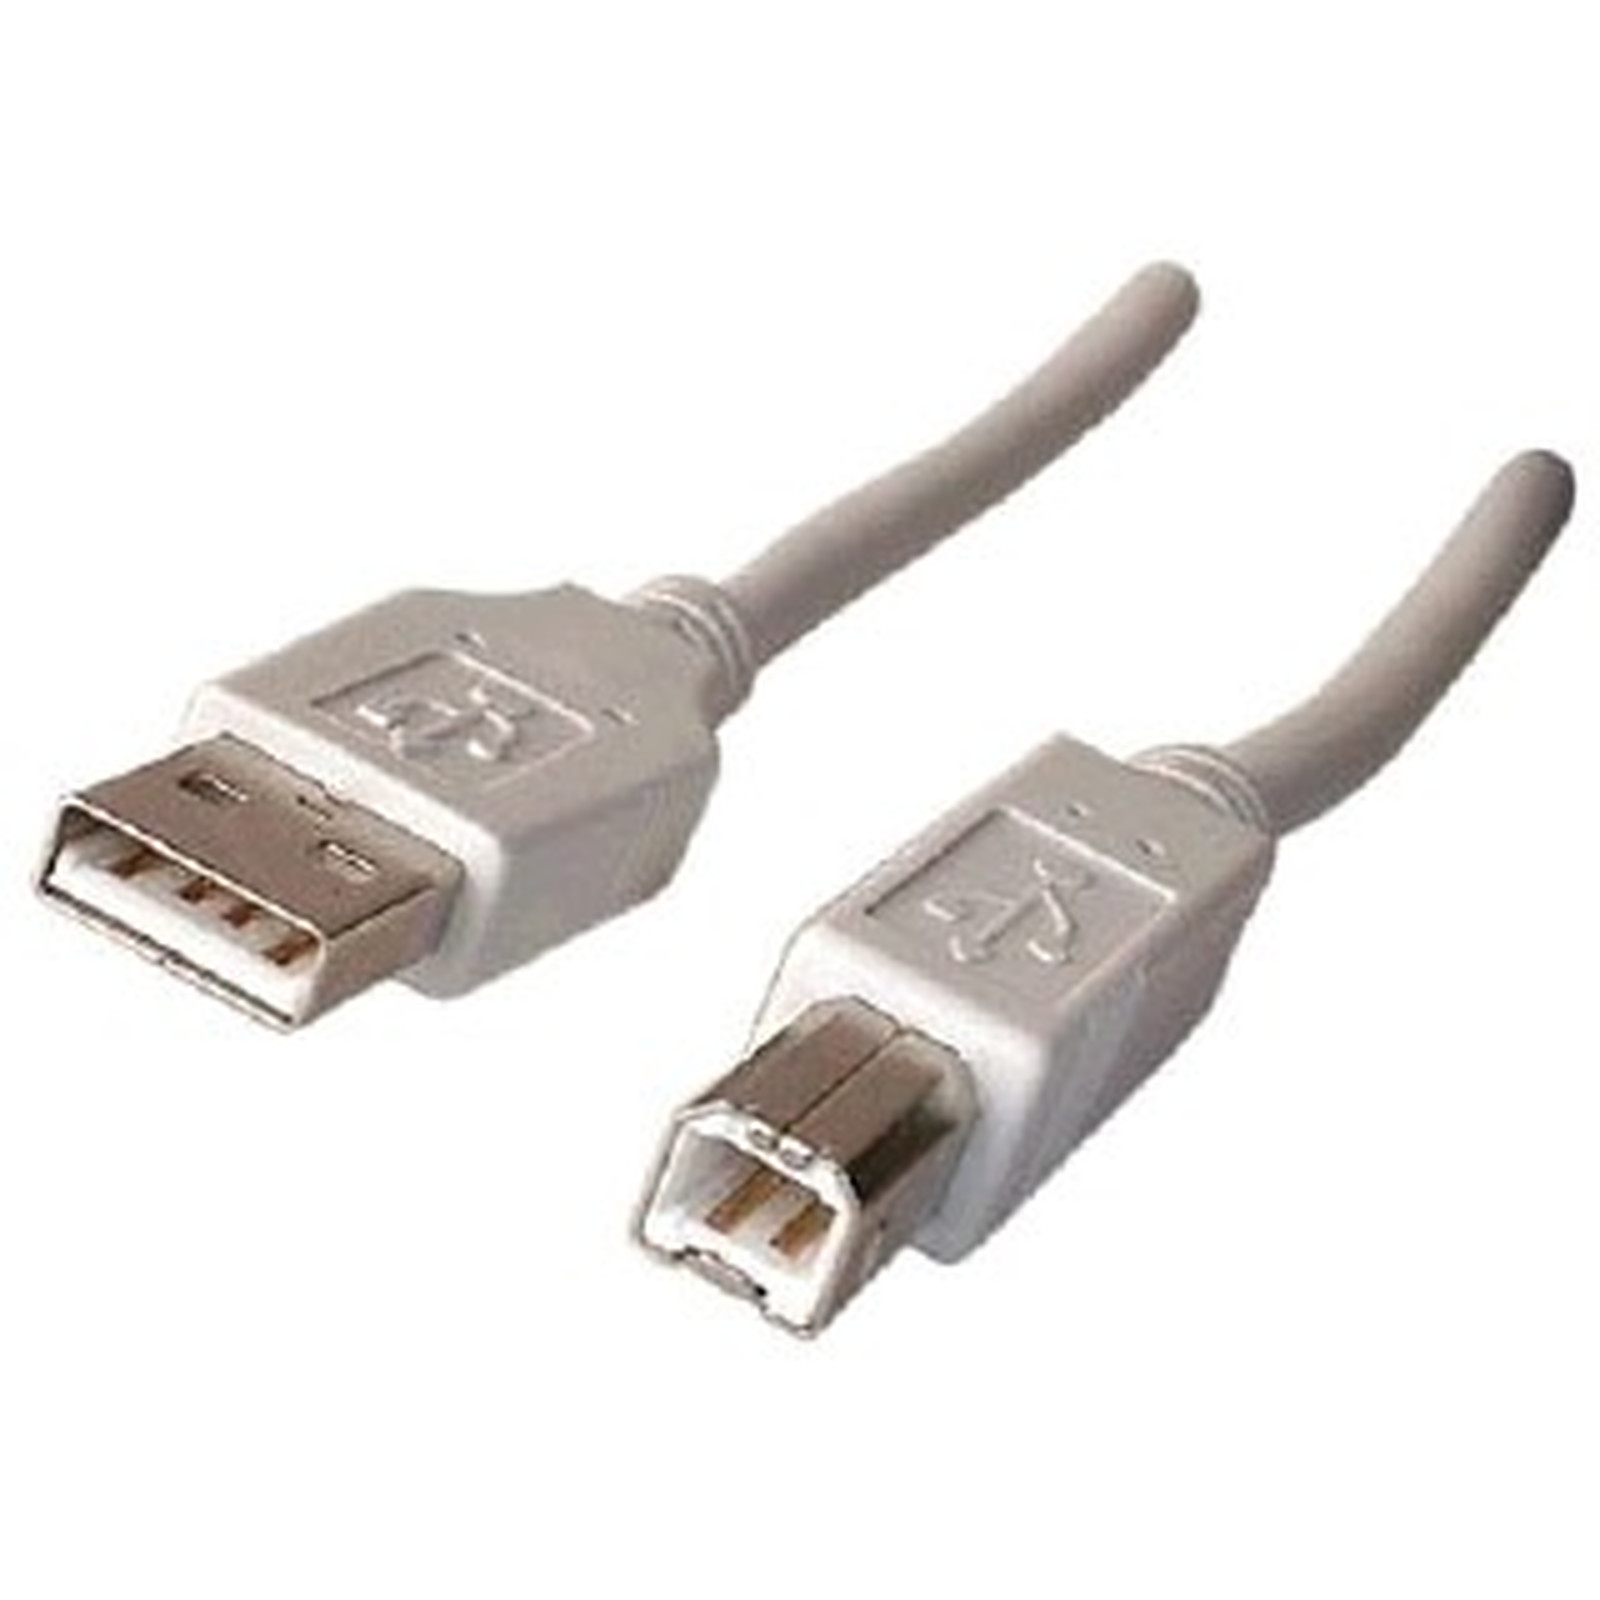 Cable USB 2.0 AB M/M 3 m - USB Generique